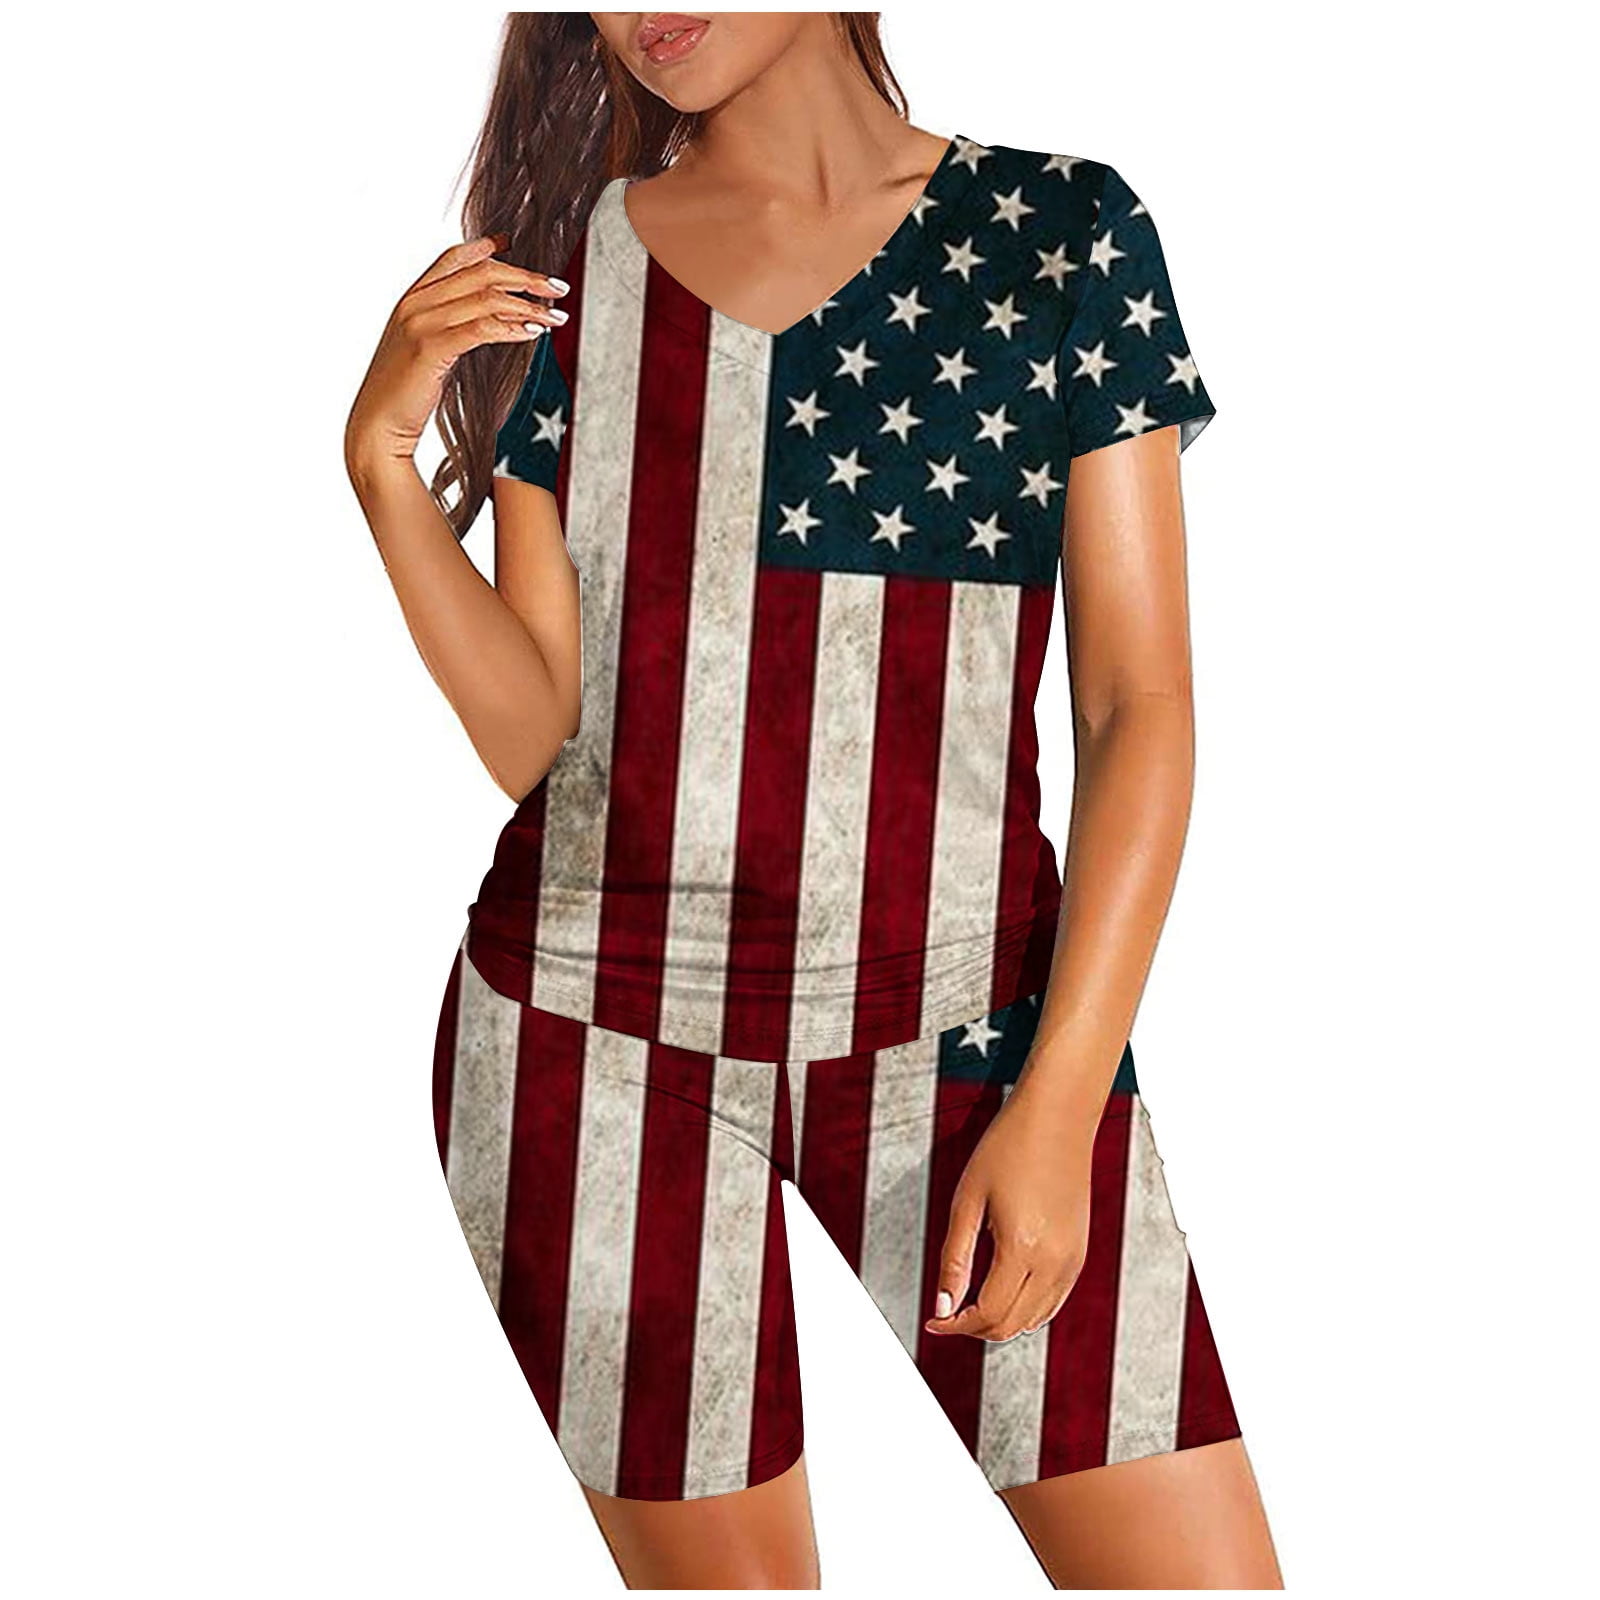 REORIAFEE Women's USA Flag Print Two Piece Set Spring Blouse Shorts ...